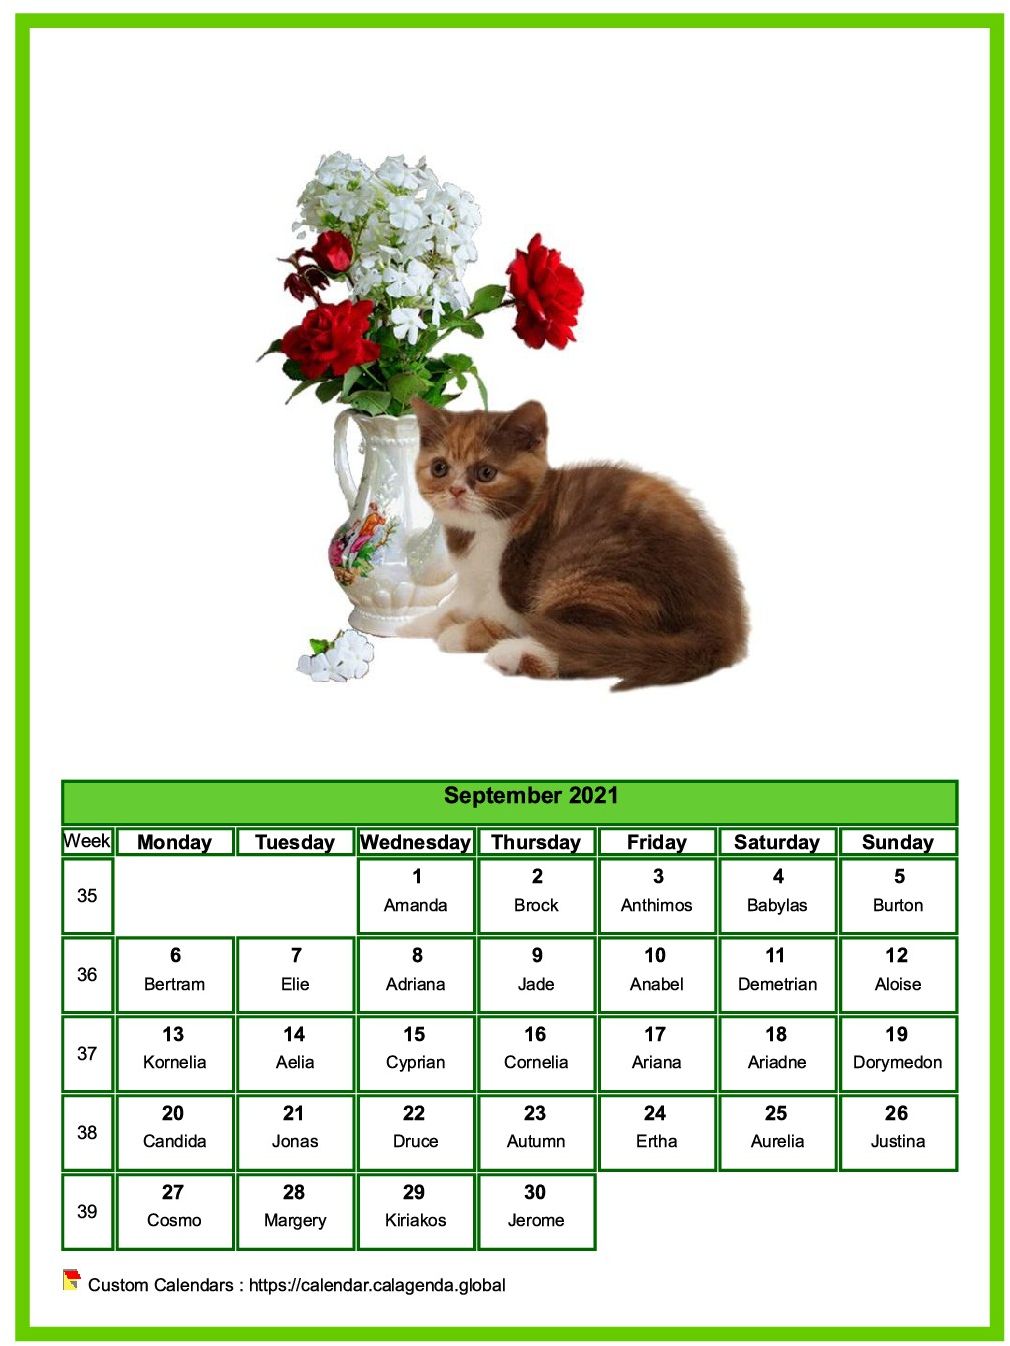 Calendar September 2021 cats